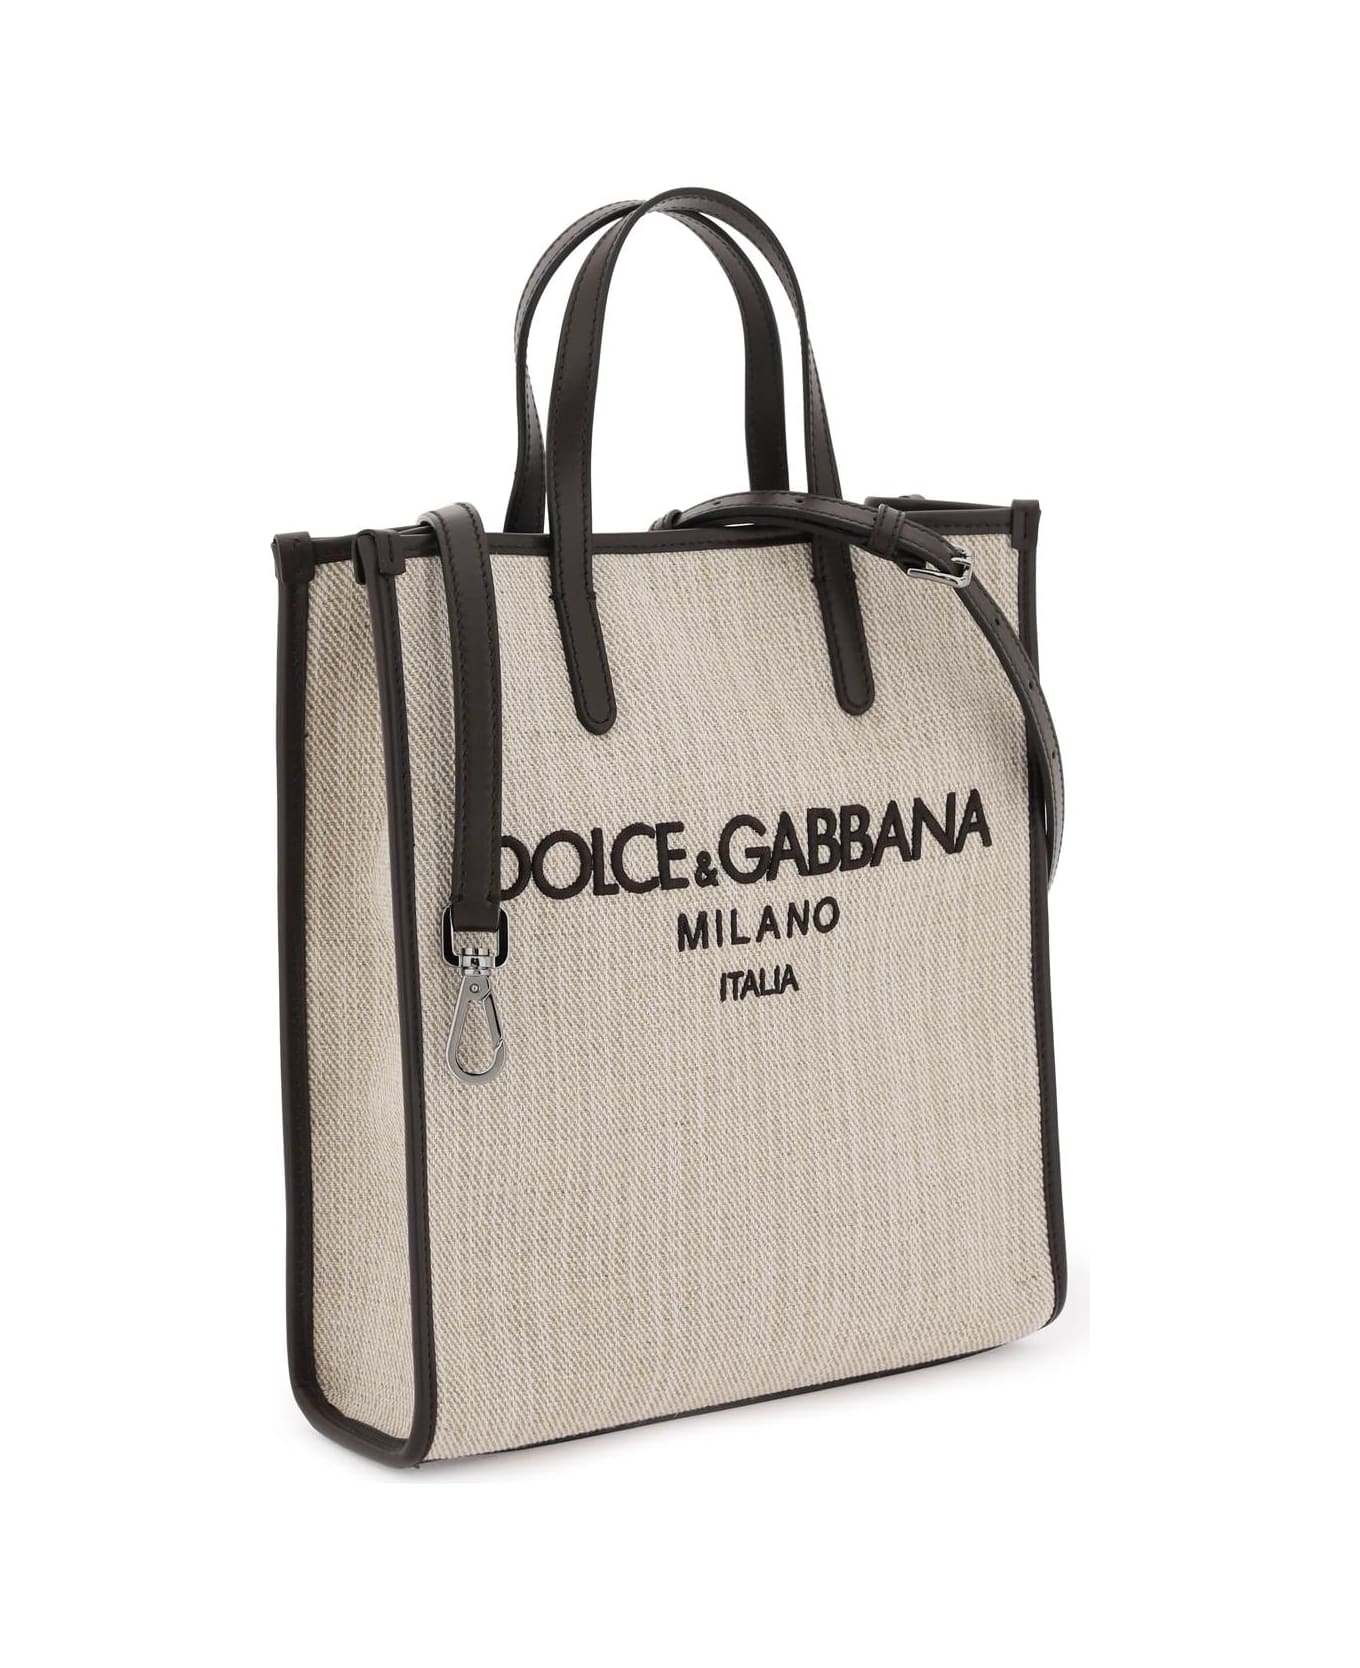 Dolce & Gabbana Textured Canvas Tote Bag - Beige